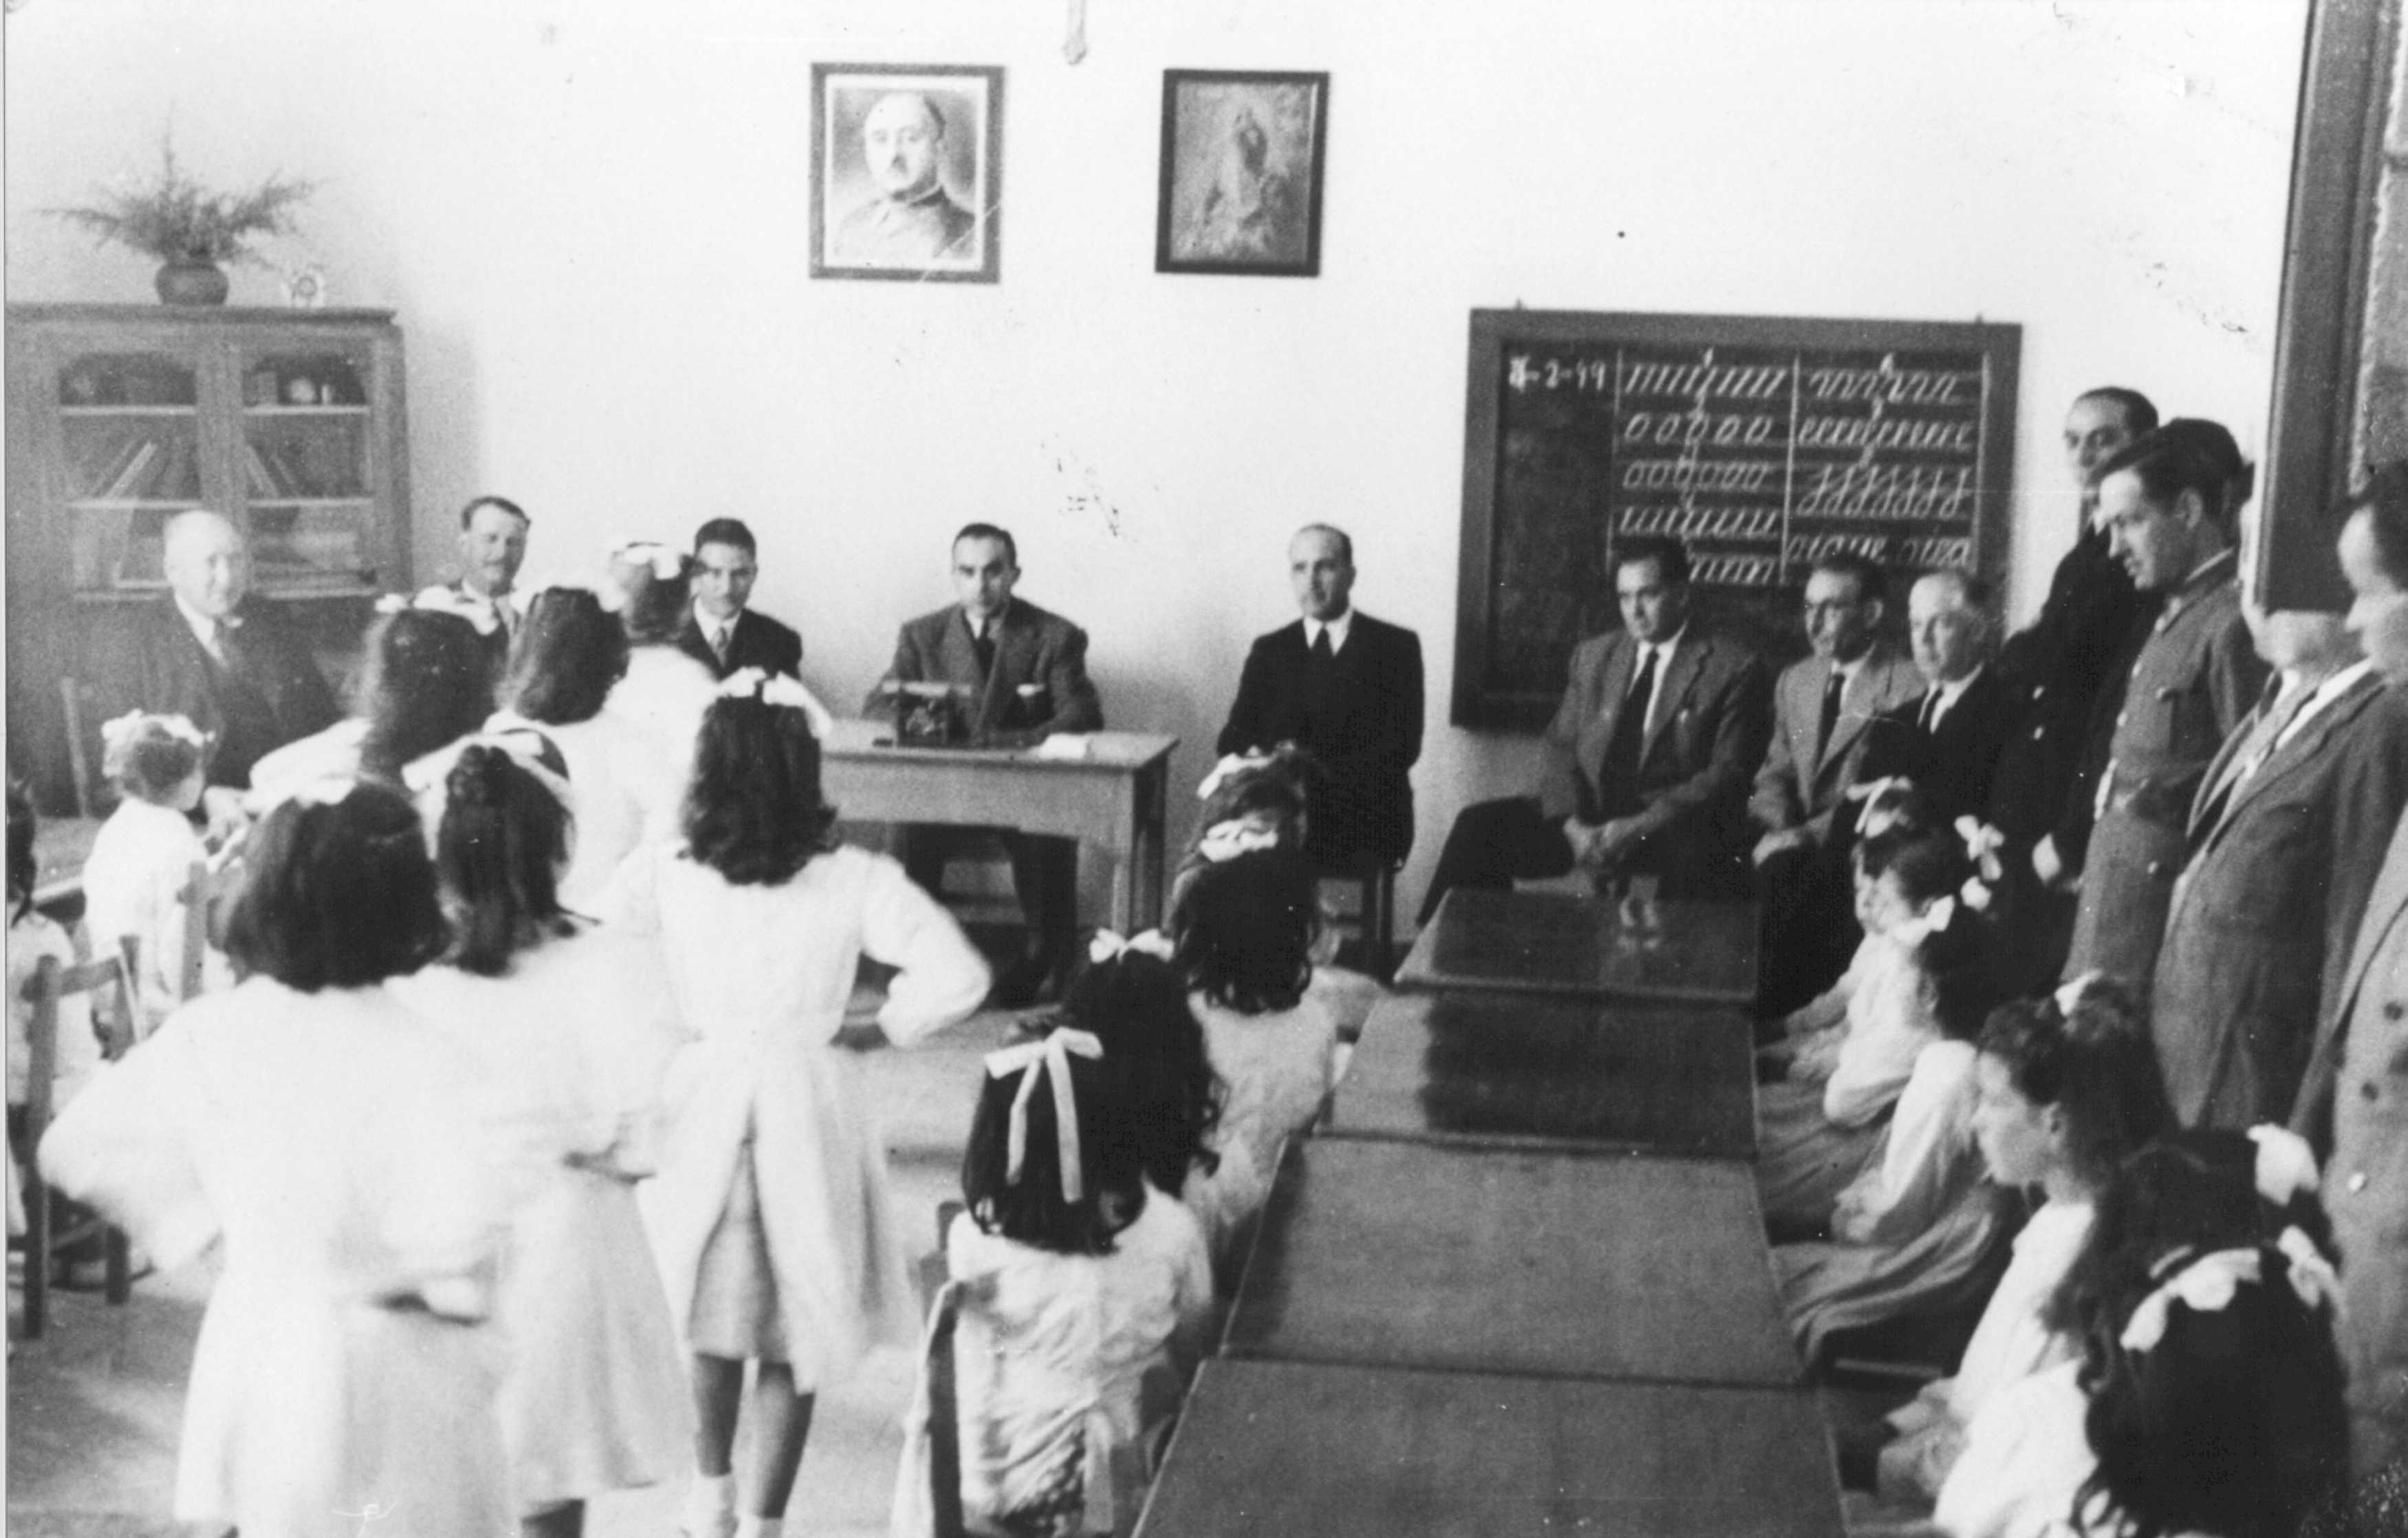 El Gobernador Civil García Hernández con las autoridades locales
en visita a las escuelas del municipio.